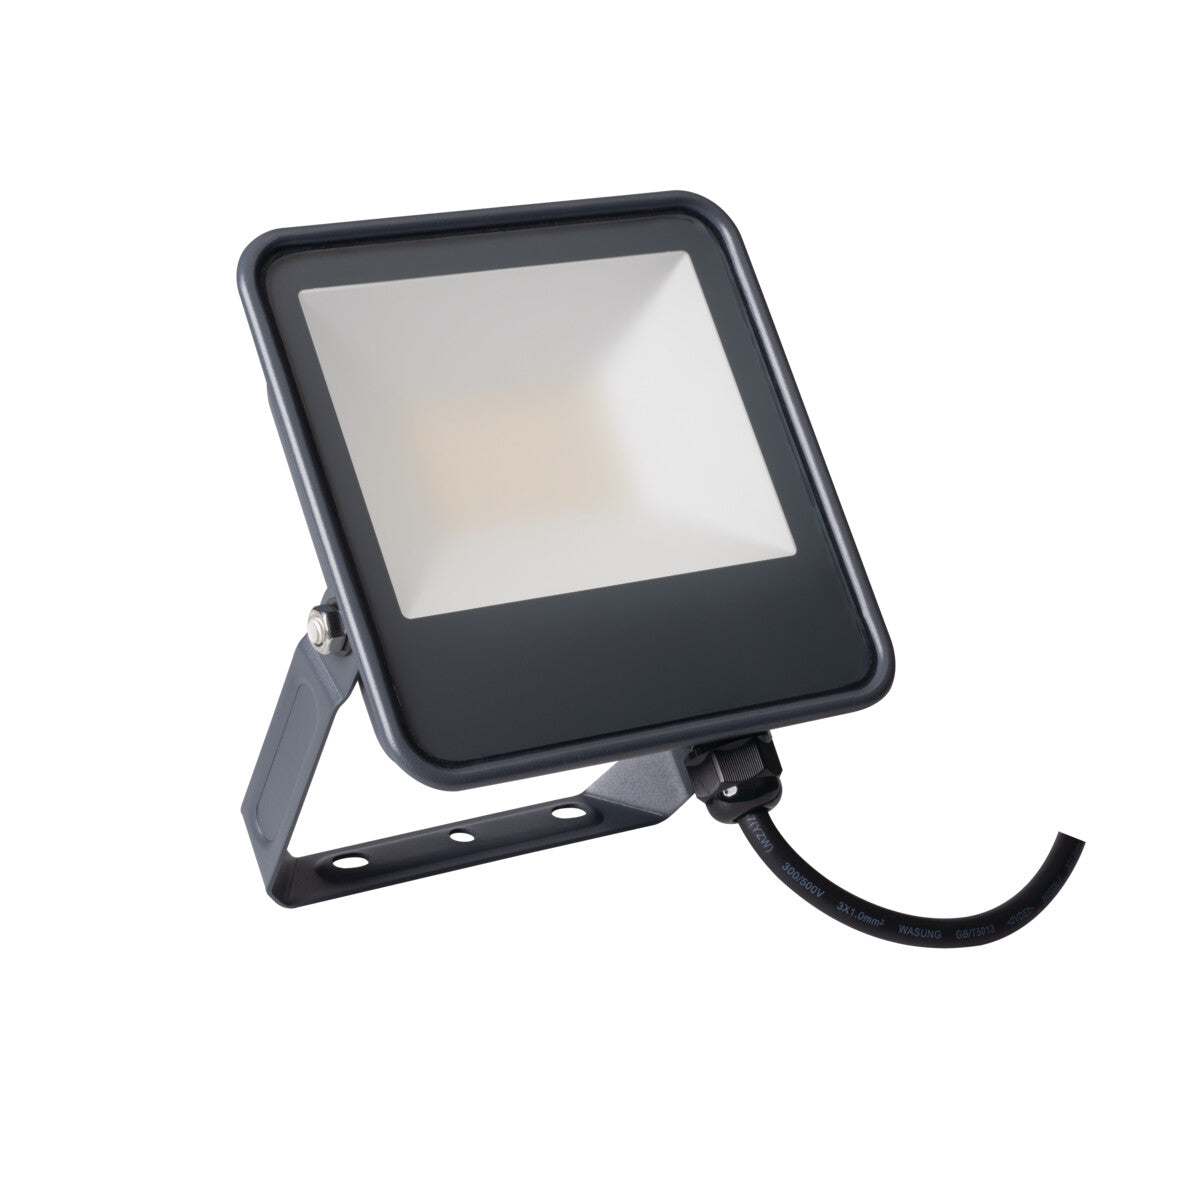 Kanlux IQ-LED FL IP65 LED Floodlight Waterproof Outdoor Neutral White Light 4000K